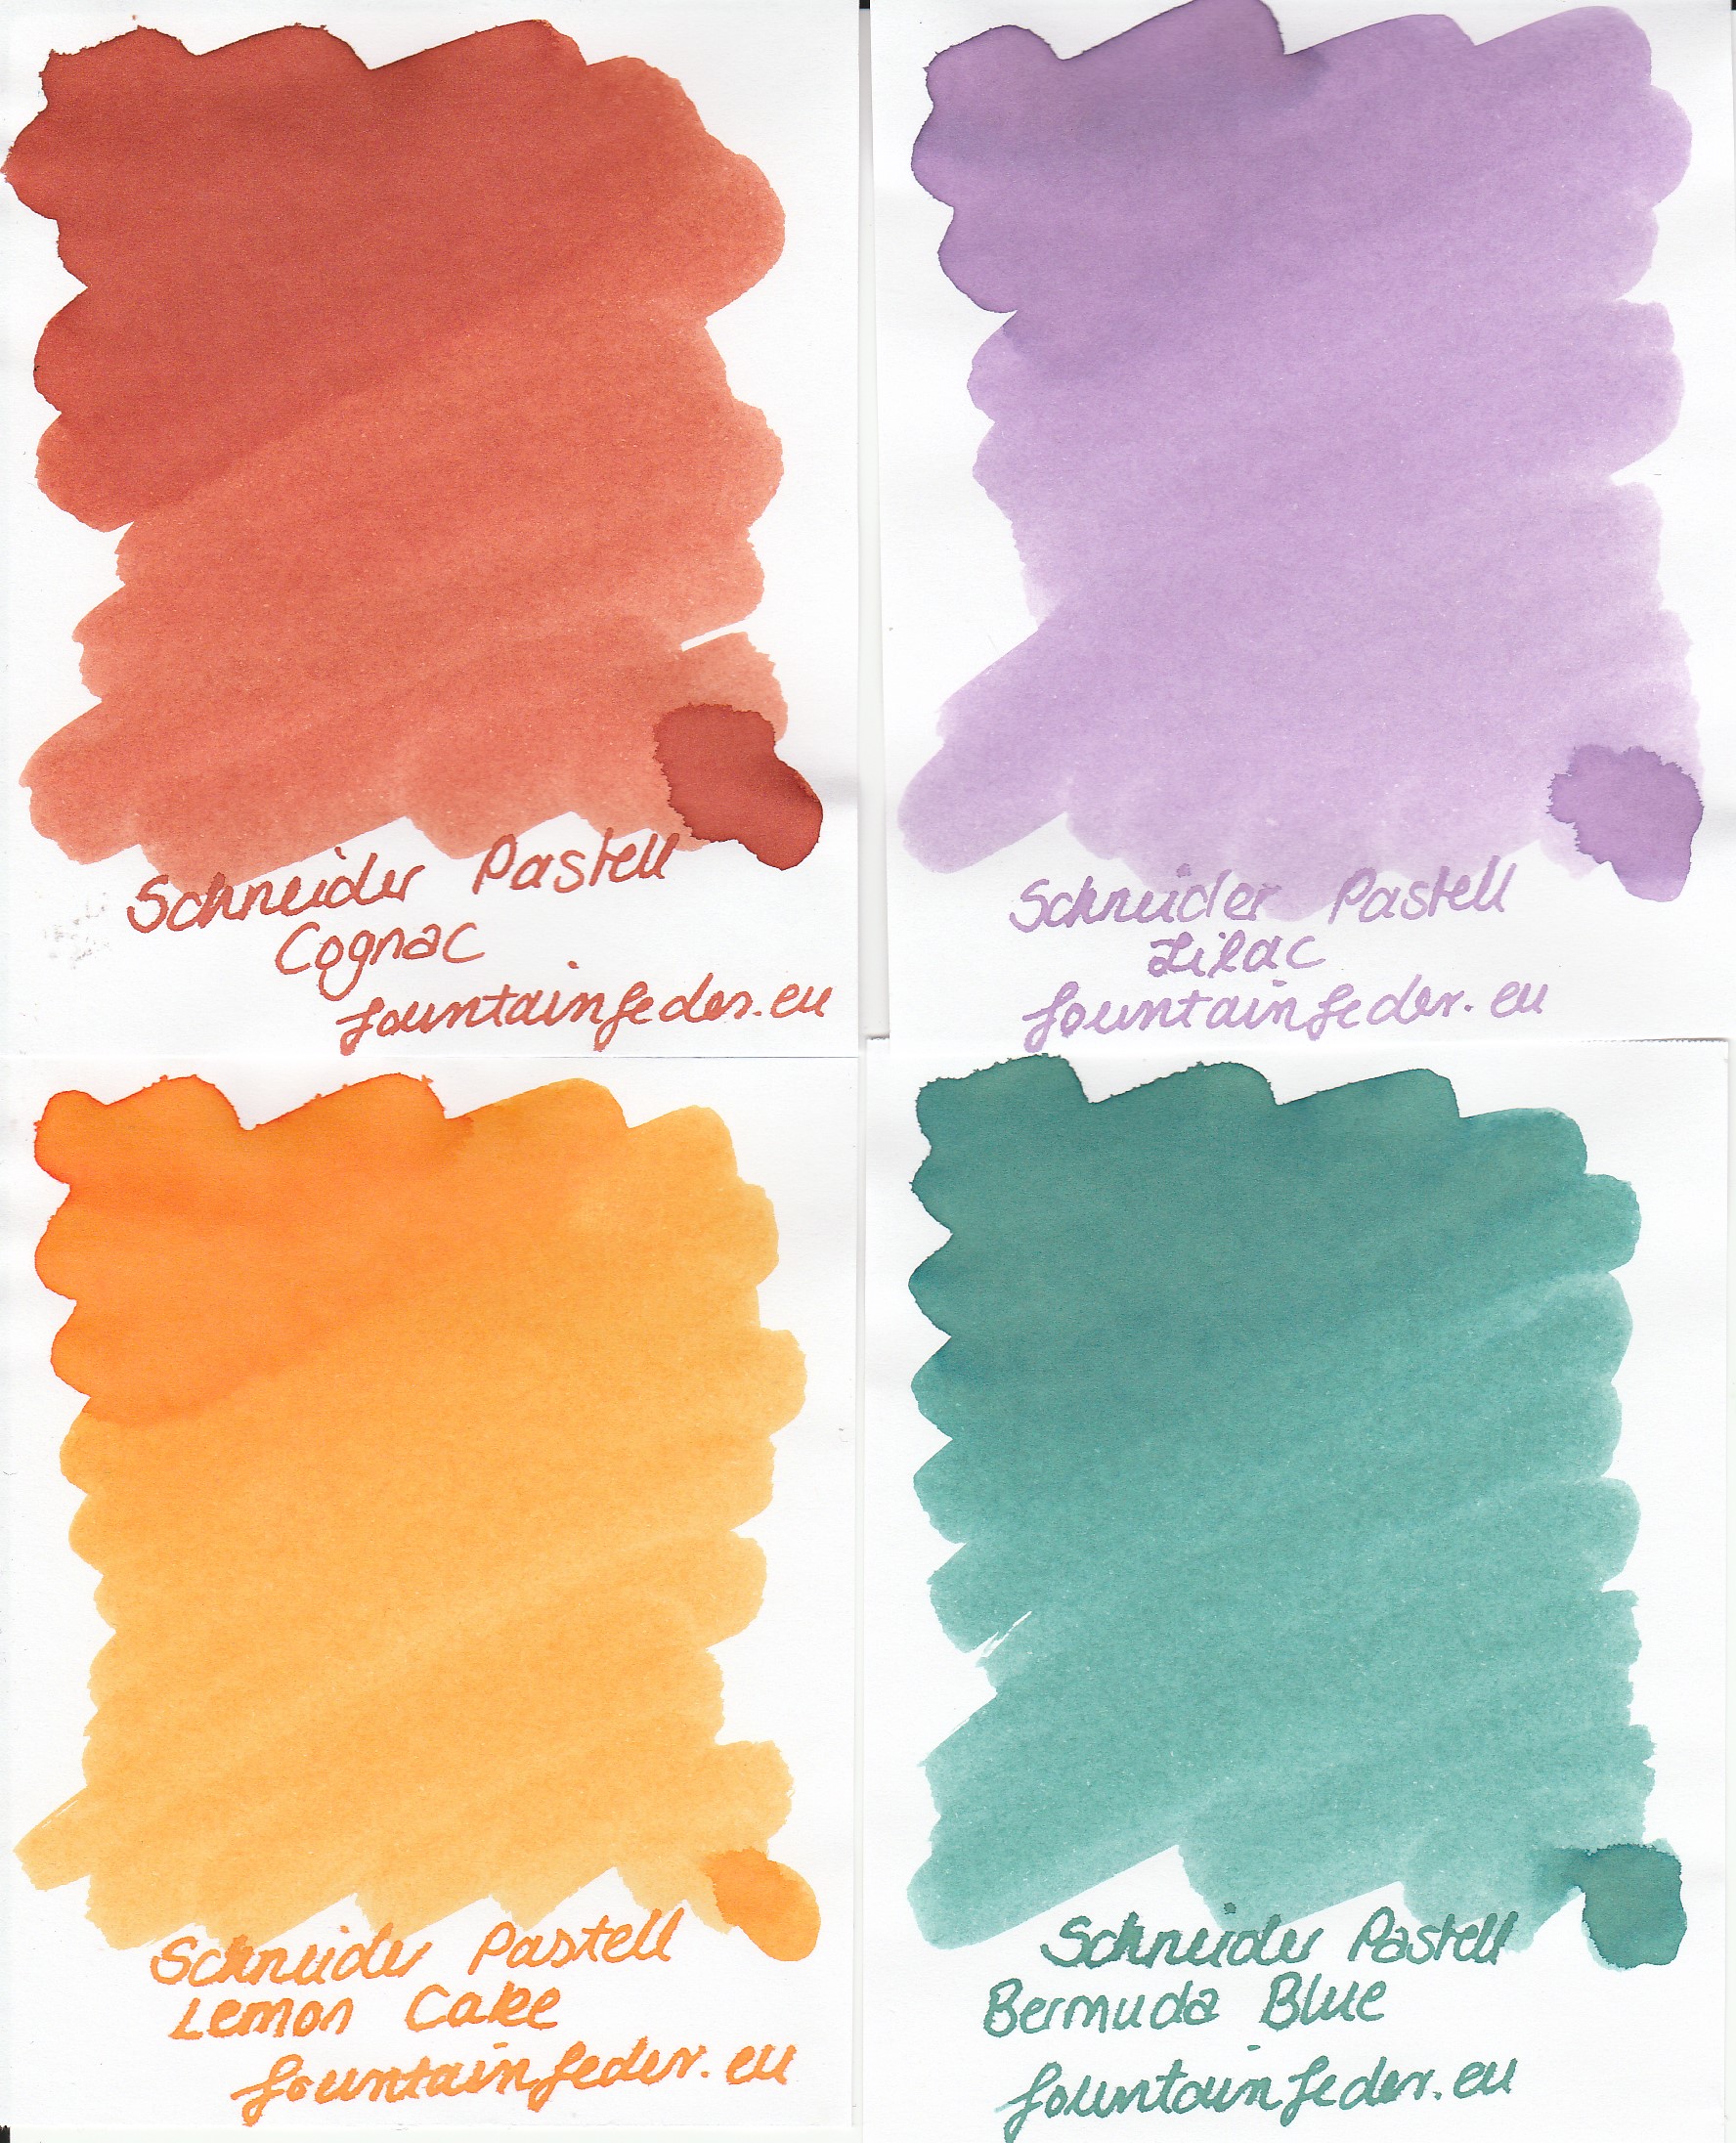 Schneider Pastell Ink Apricot 15ml  